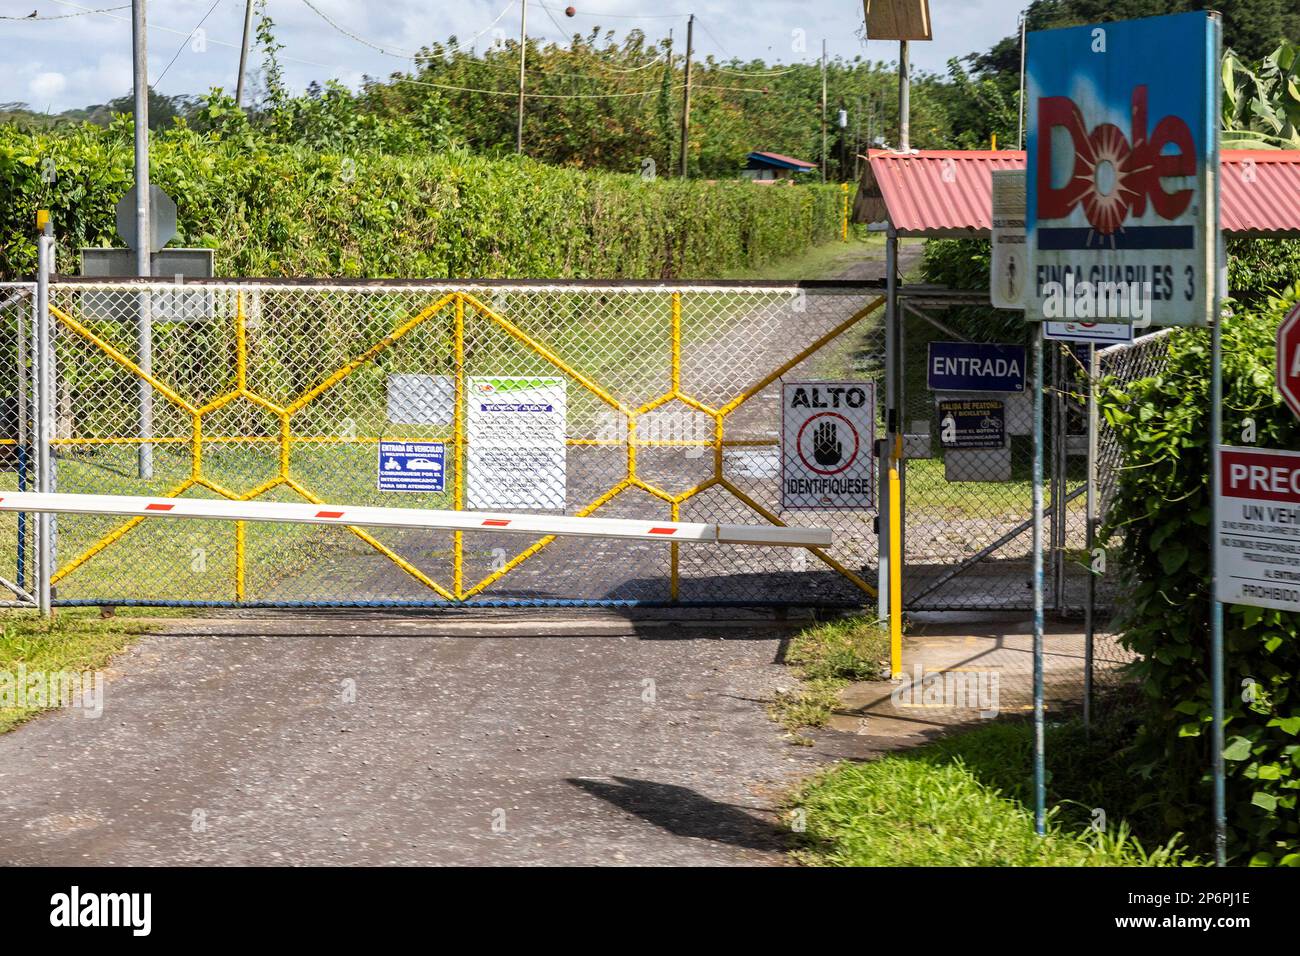 Cariari, Costa Rica - der Eingang zu einer Dole Bananenplantage im Nordosten Costa Ricas. Der Zugang zu Bananenplantagen wird streng kontrolliert. Stockfoto